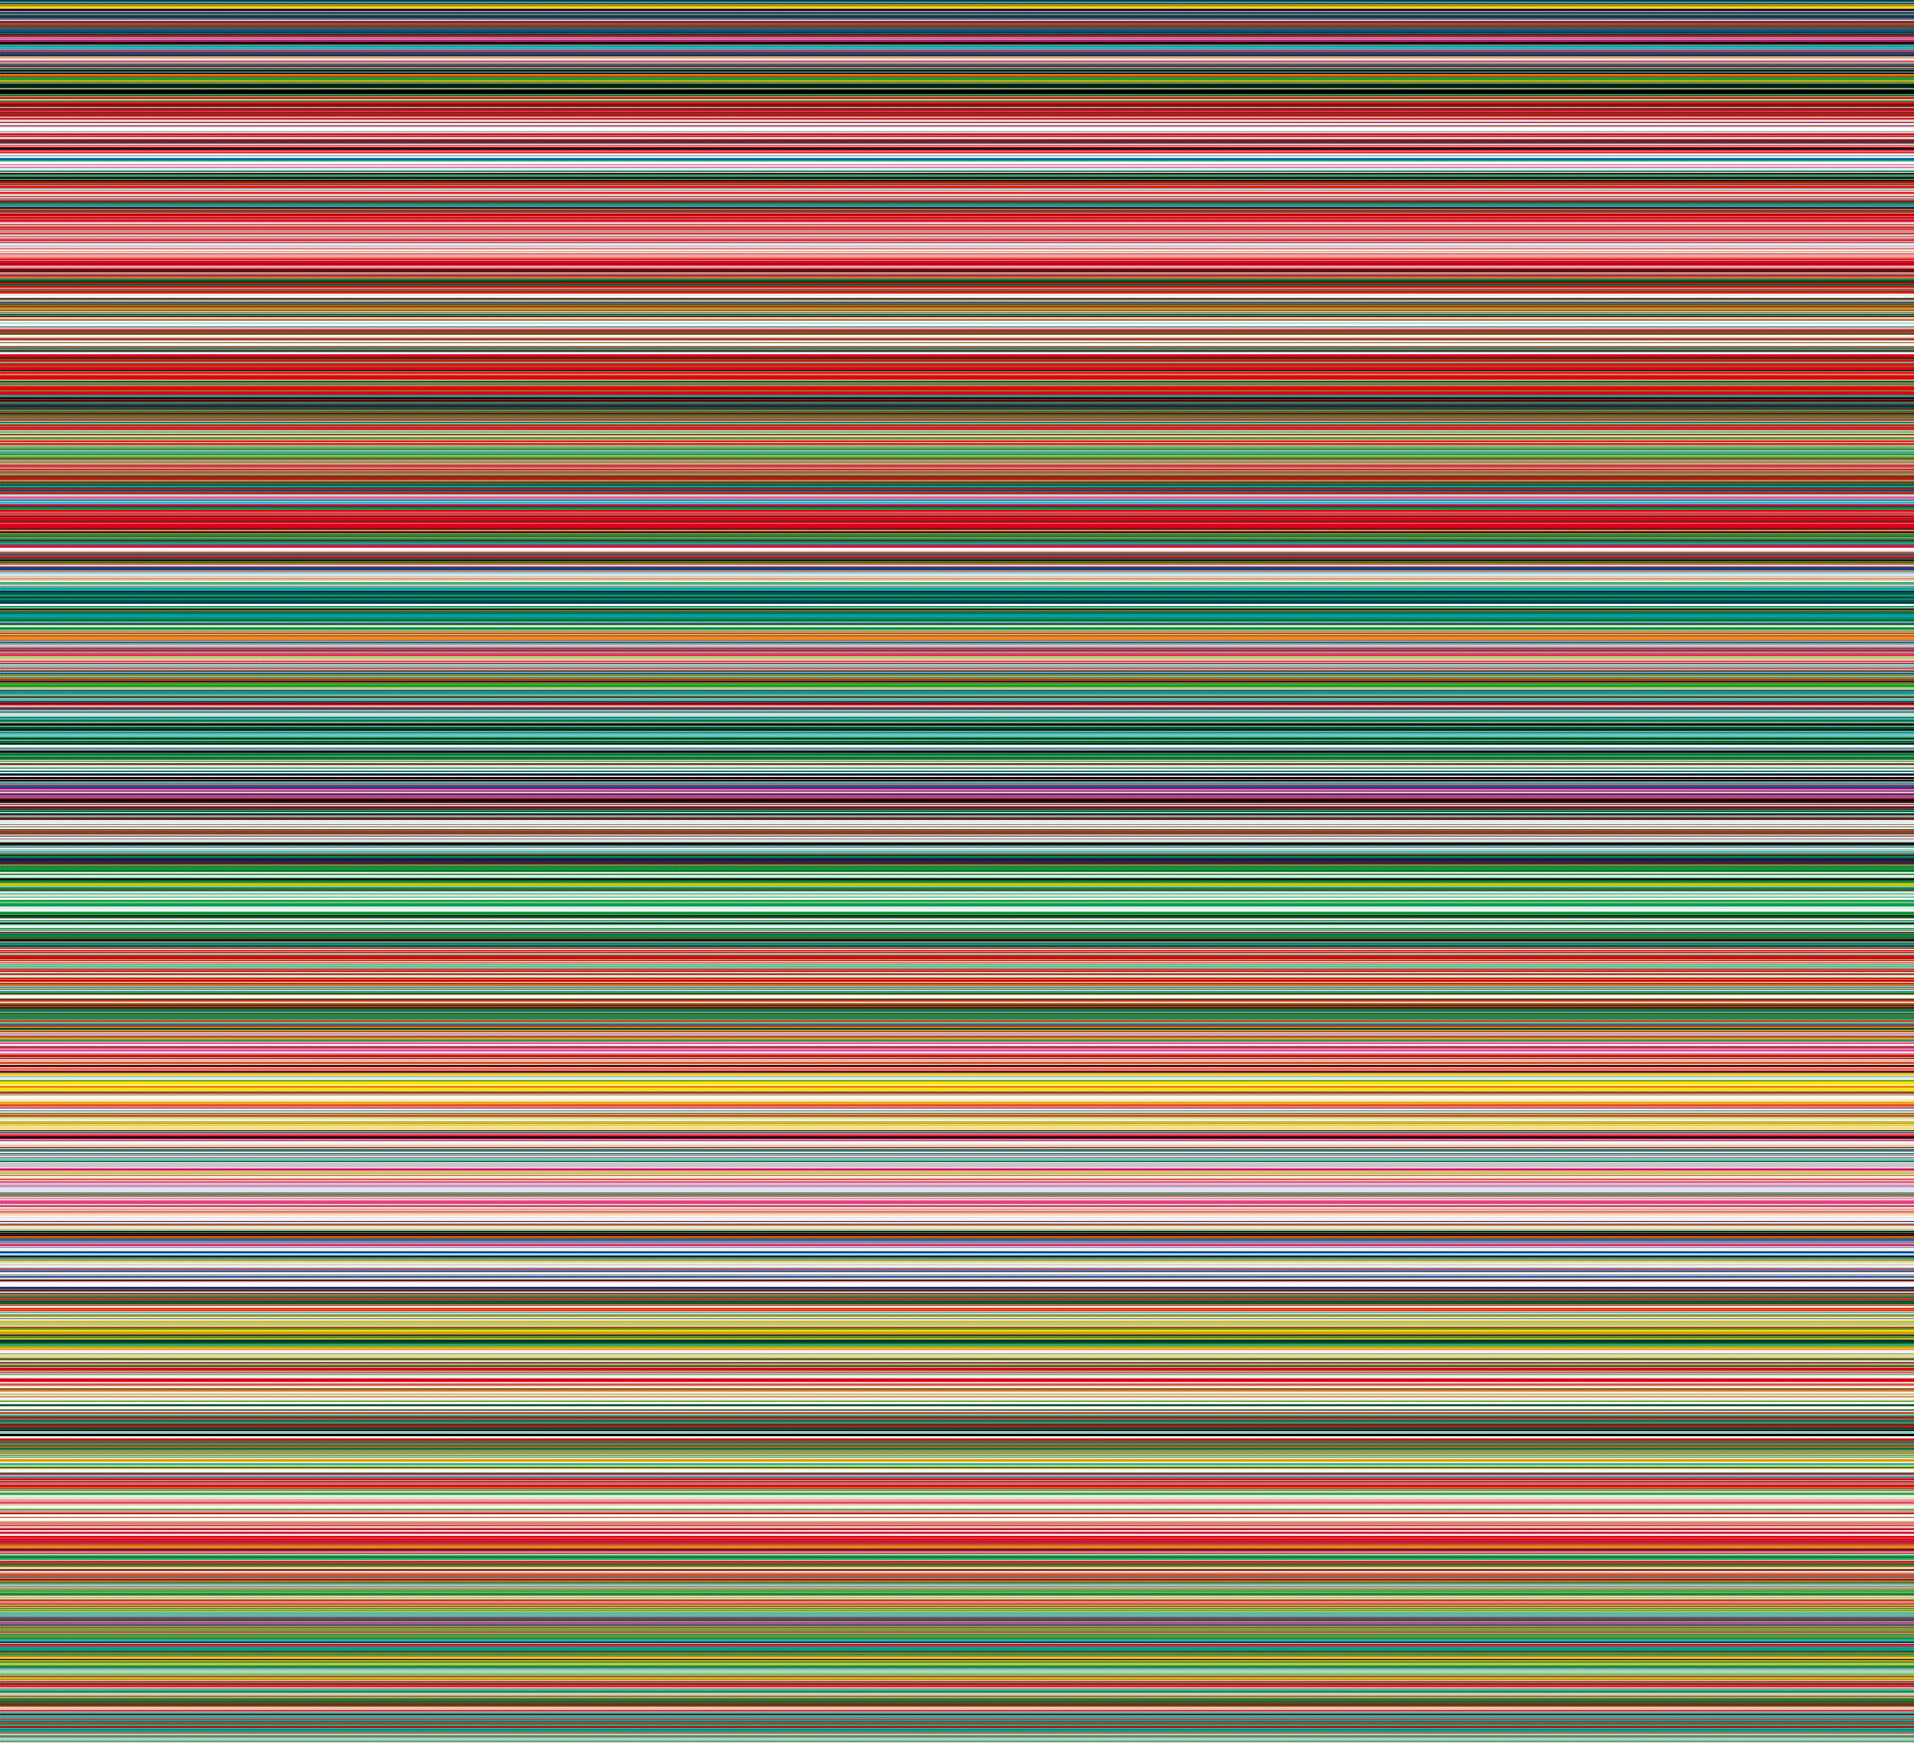 STRIP (927-9) by Gerhard Richter - 2012 - 210 x 230 cm 